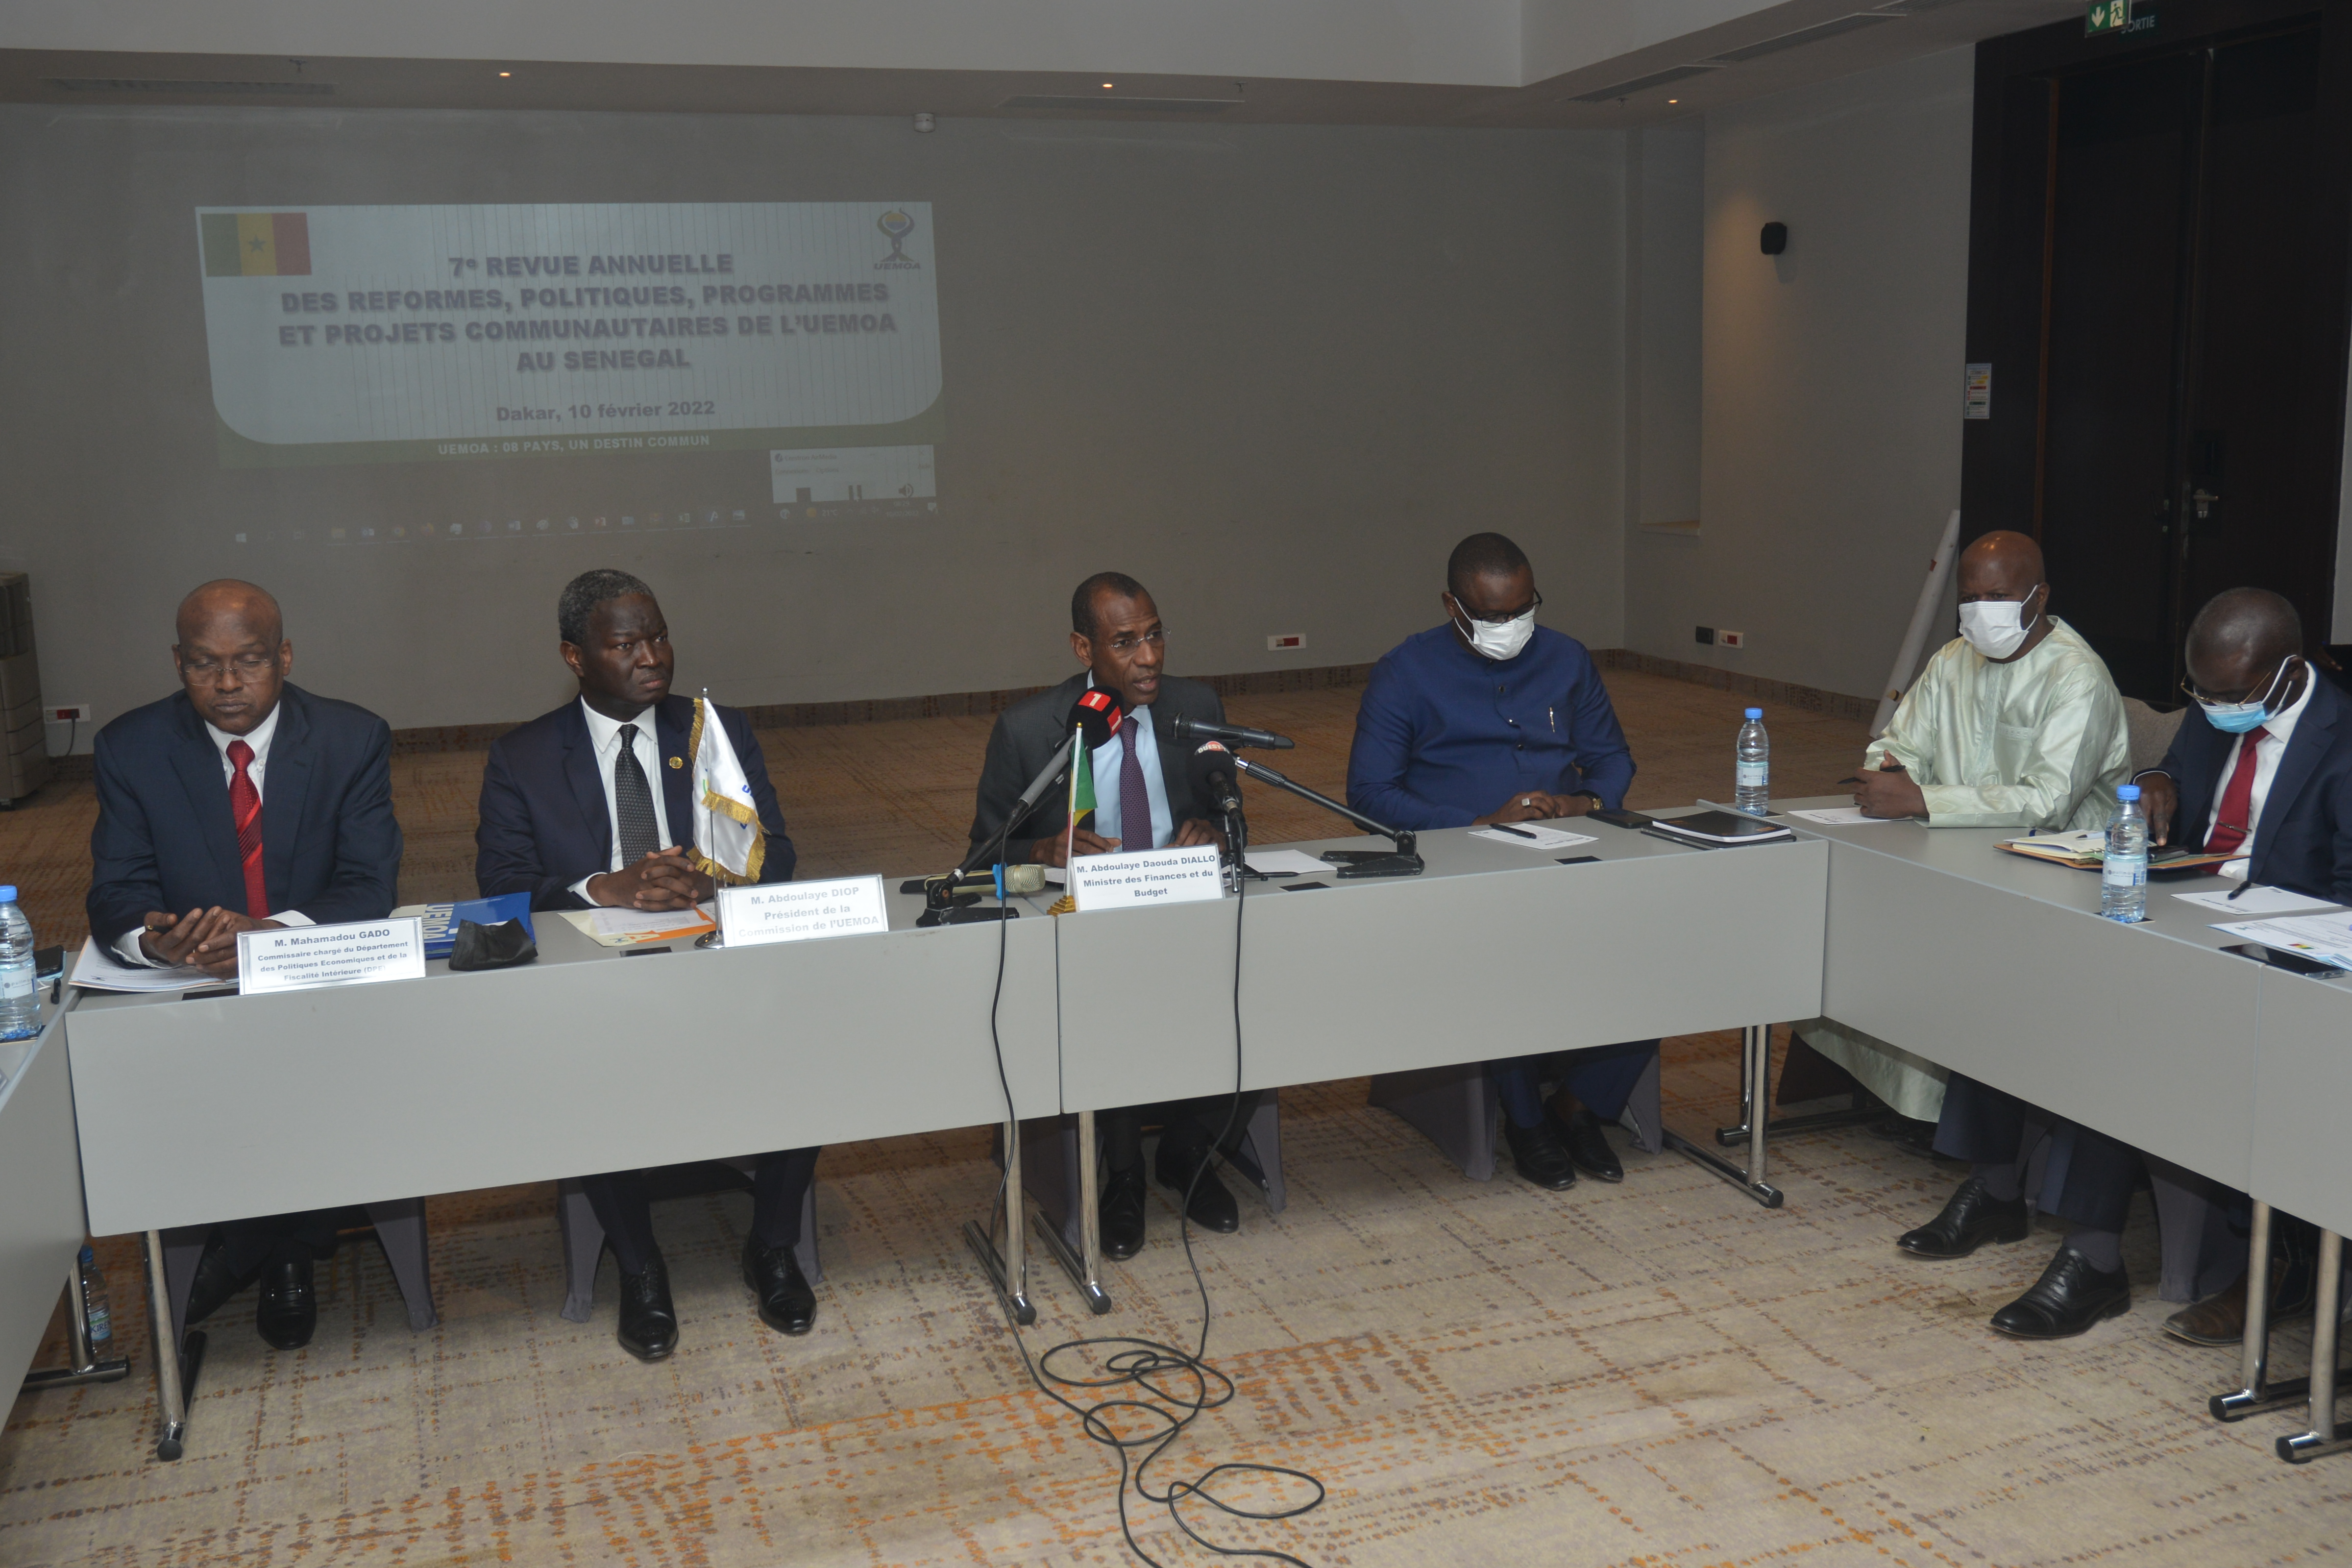 Cérémonie de présentation du Mémorandum national sénégalais de la Revue annuelle des réformes, politiques, programmes et projets de l’UEMOA.